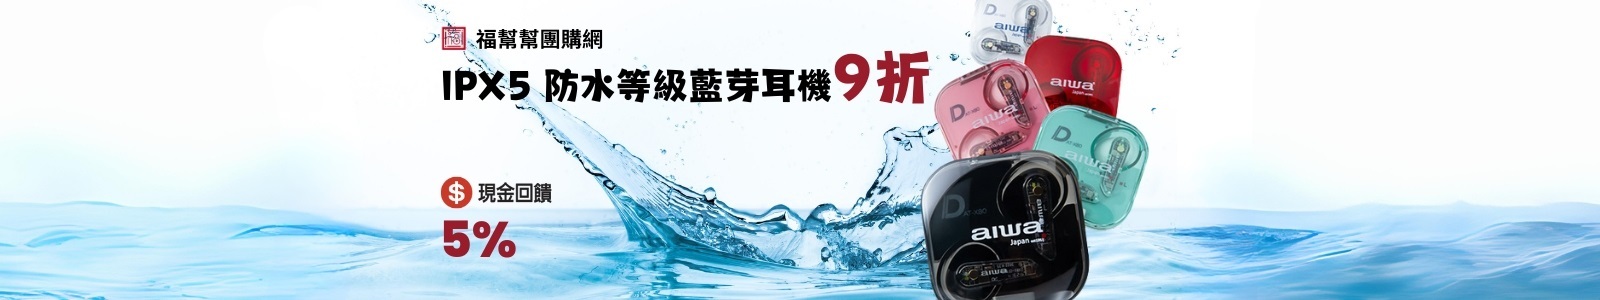 福幫幫團購網 ，現金回饋5%，IPX5 防水等級藍芽耳機 特價九折！